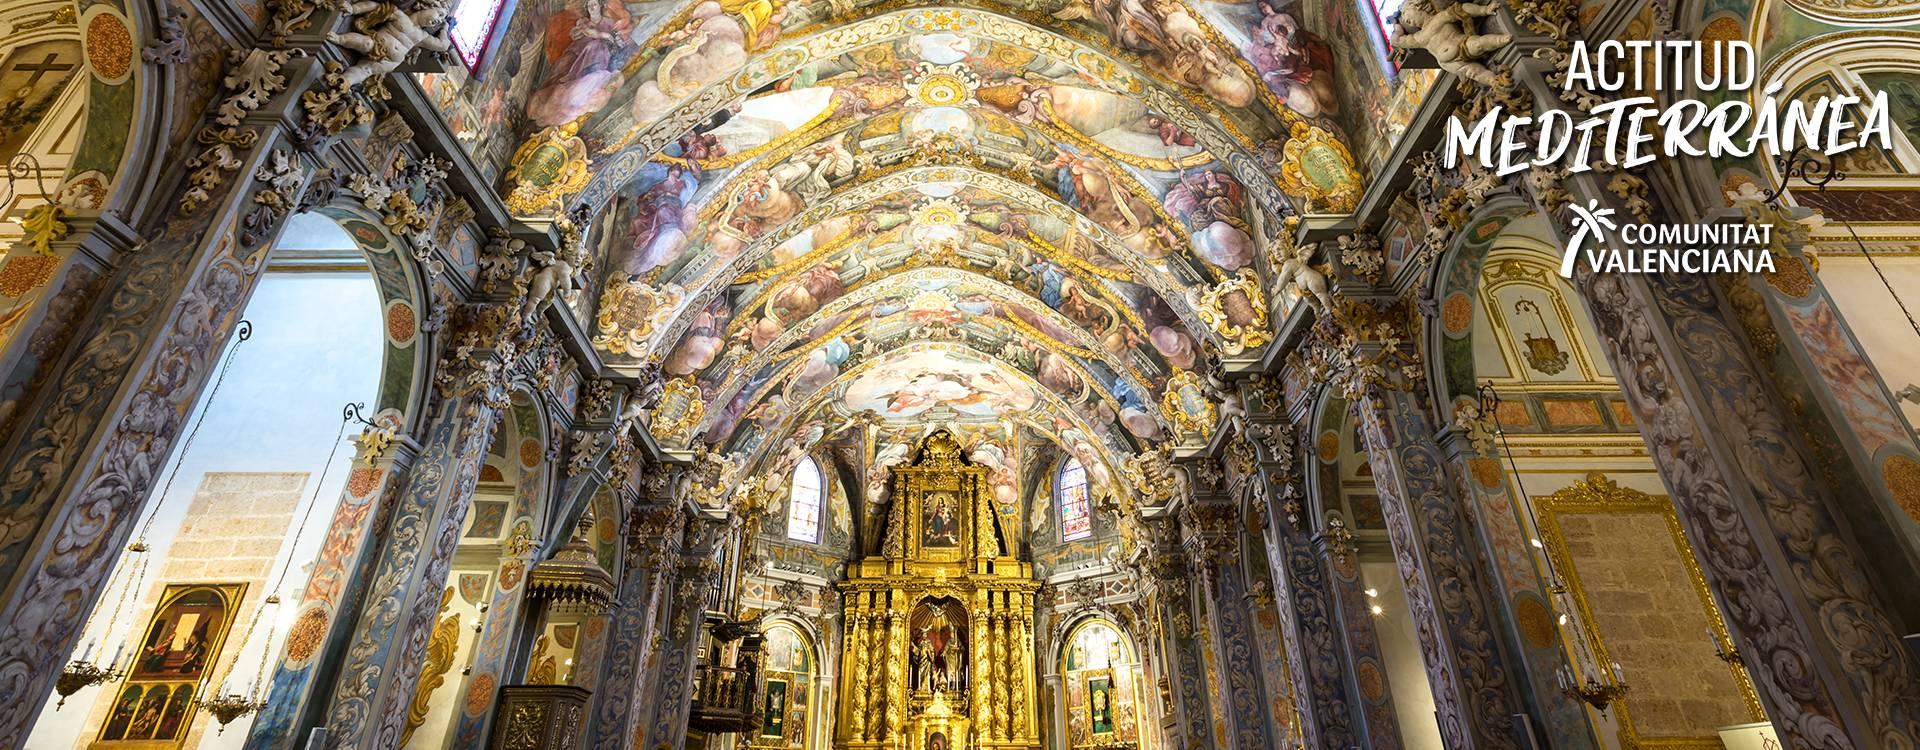 Imagen de La Parroquia de San Nicolás la ‘capilla Sixtina valenciana’